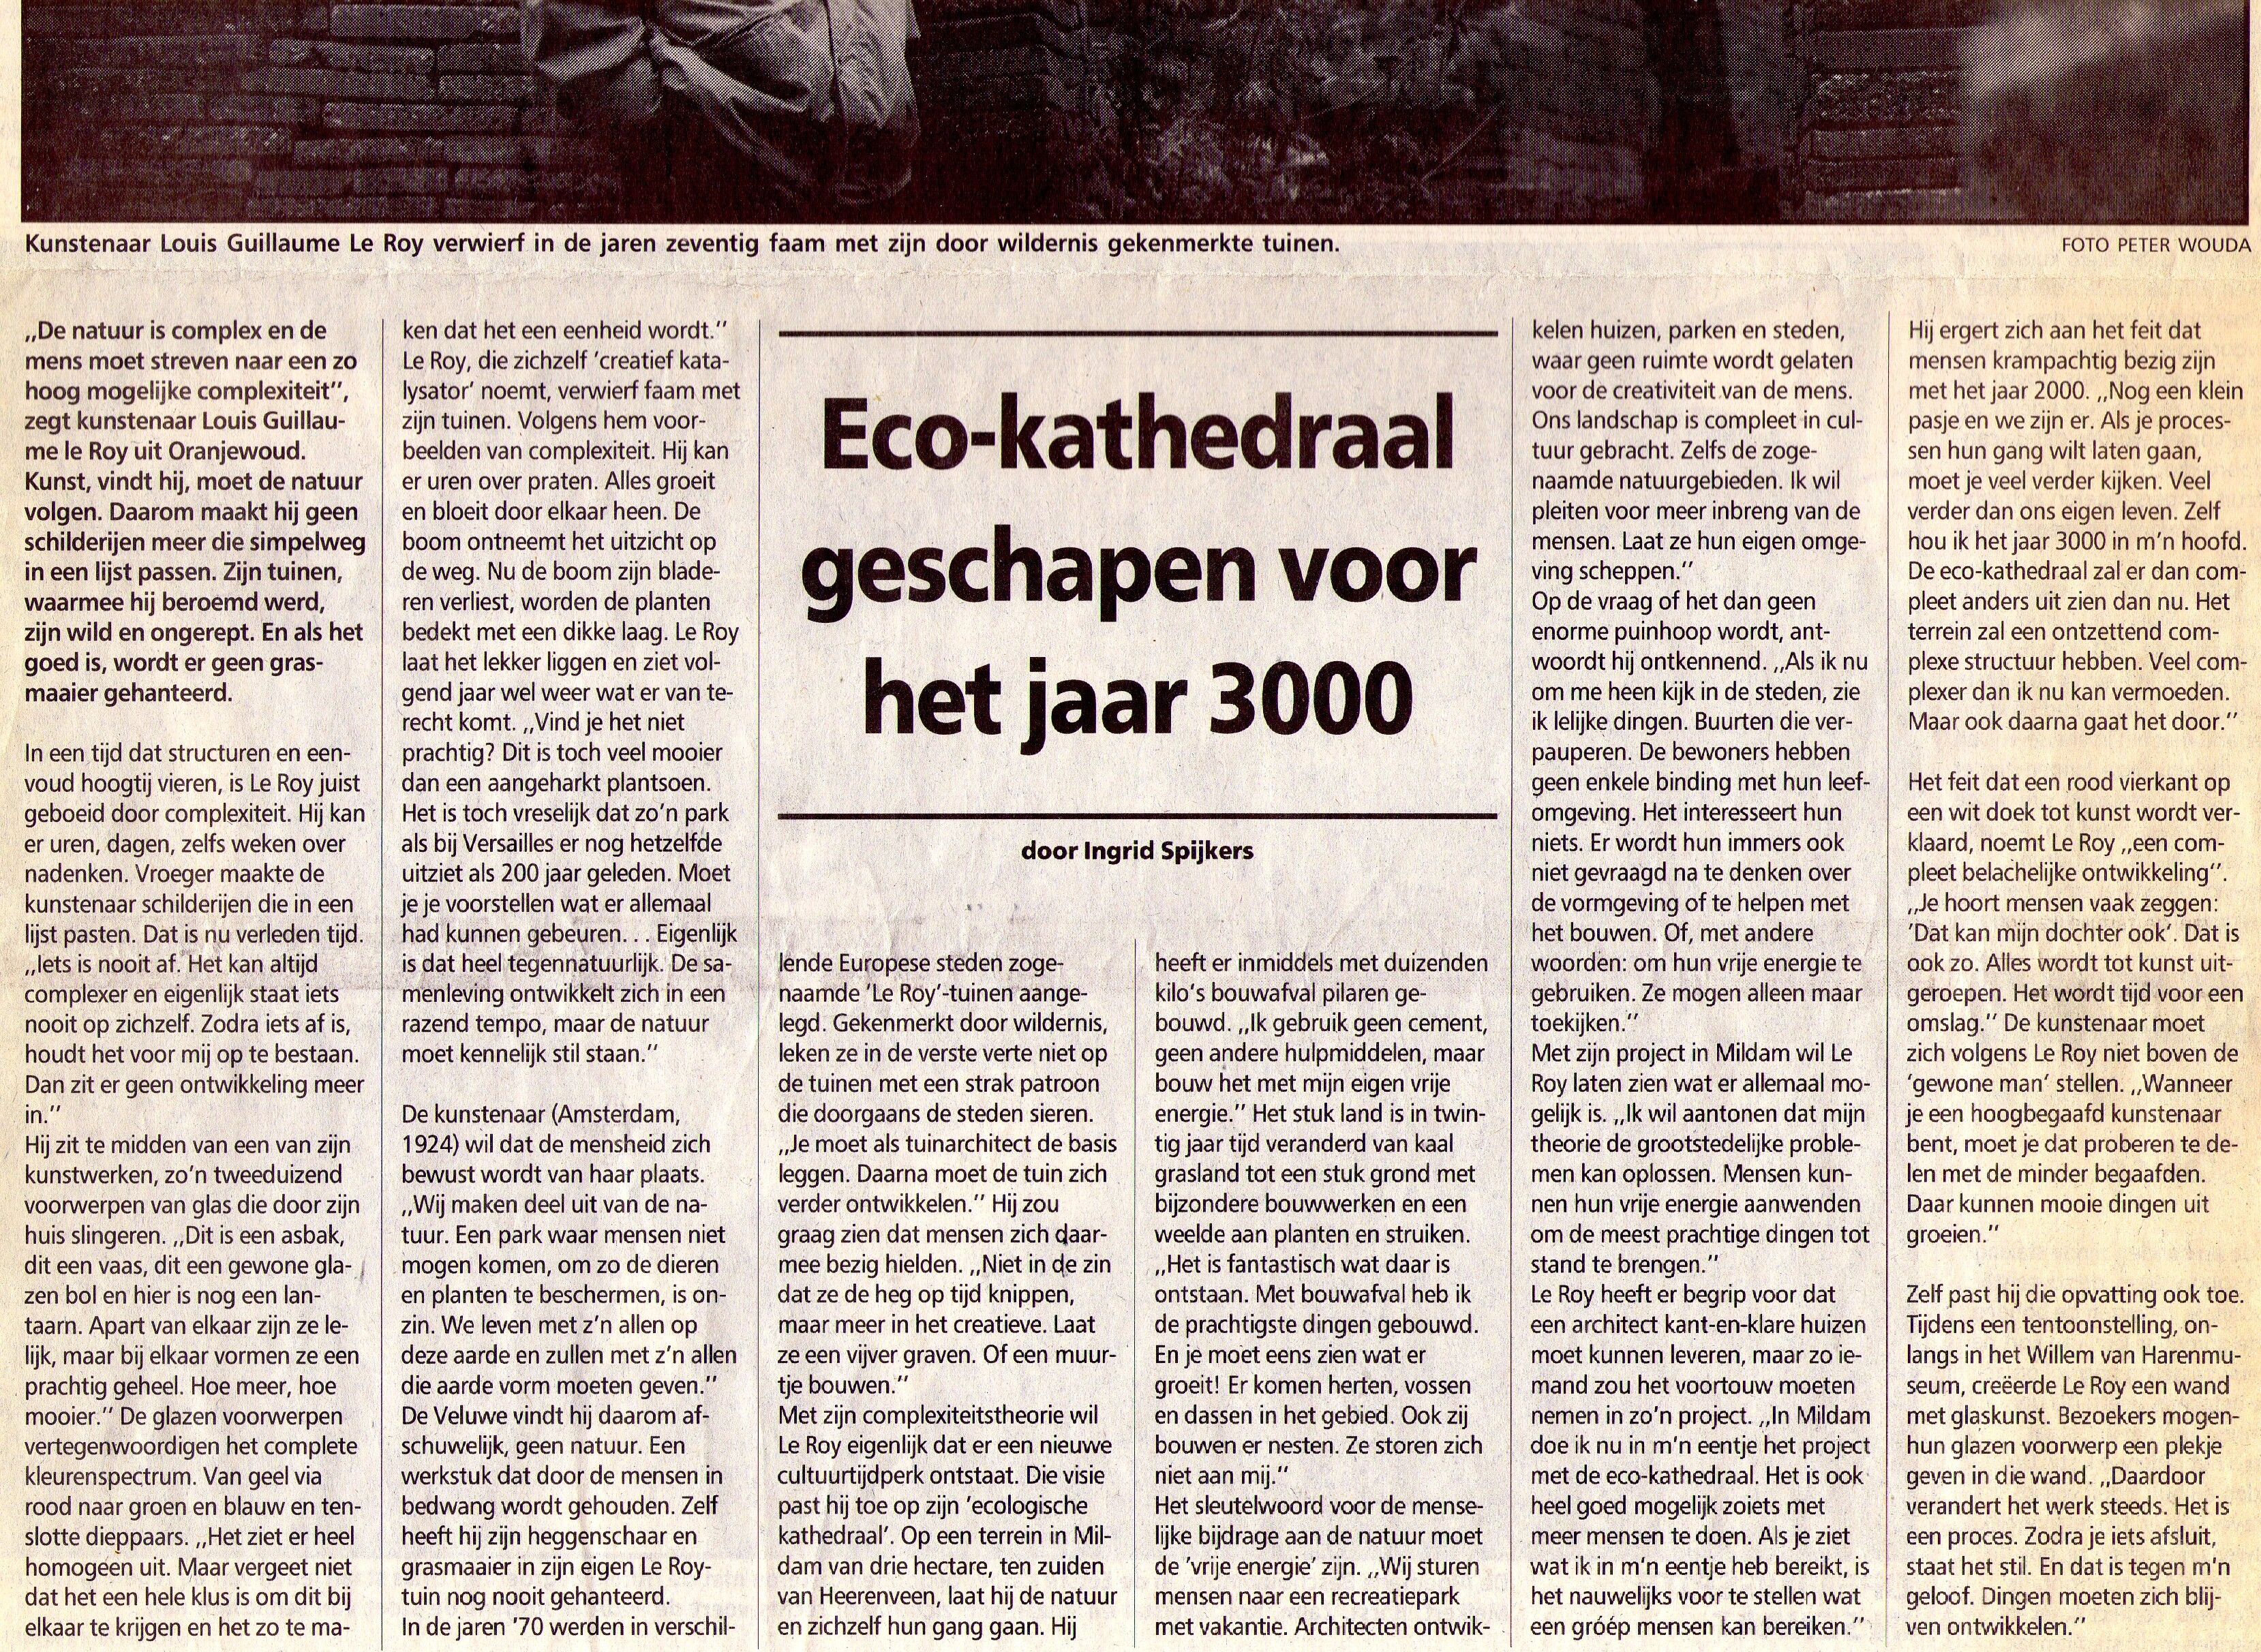 19961120_Ecokathedraal_geschapen_voor_het_jaar_3000_002.jpg